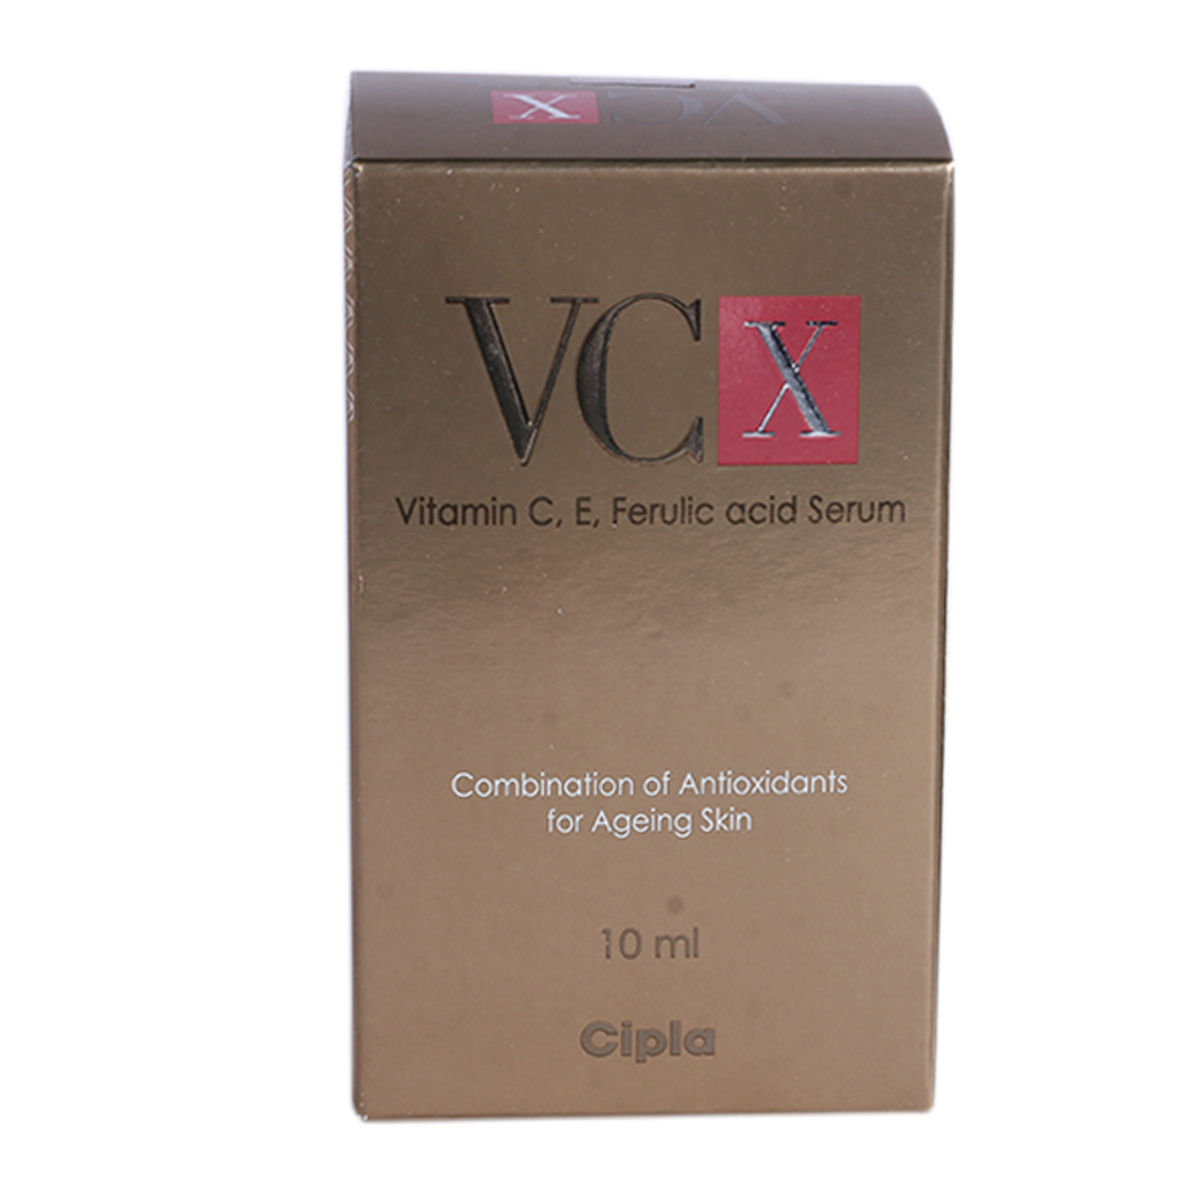 Vcx Serum, 10 ml, Pack of 1 